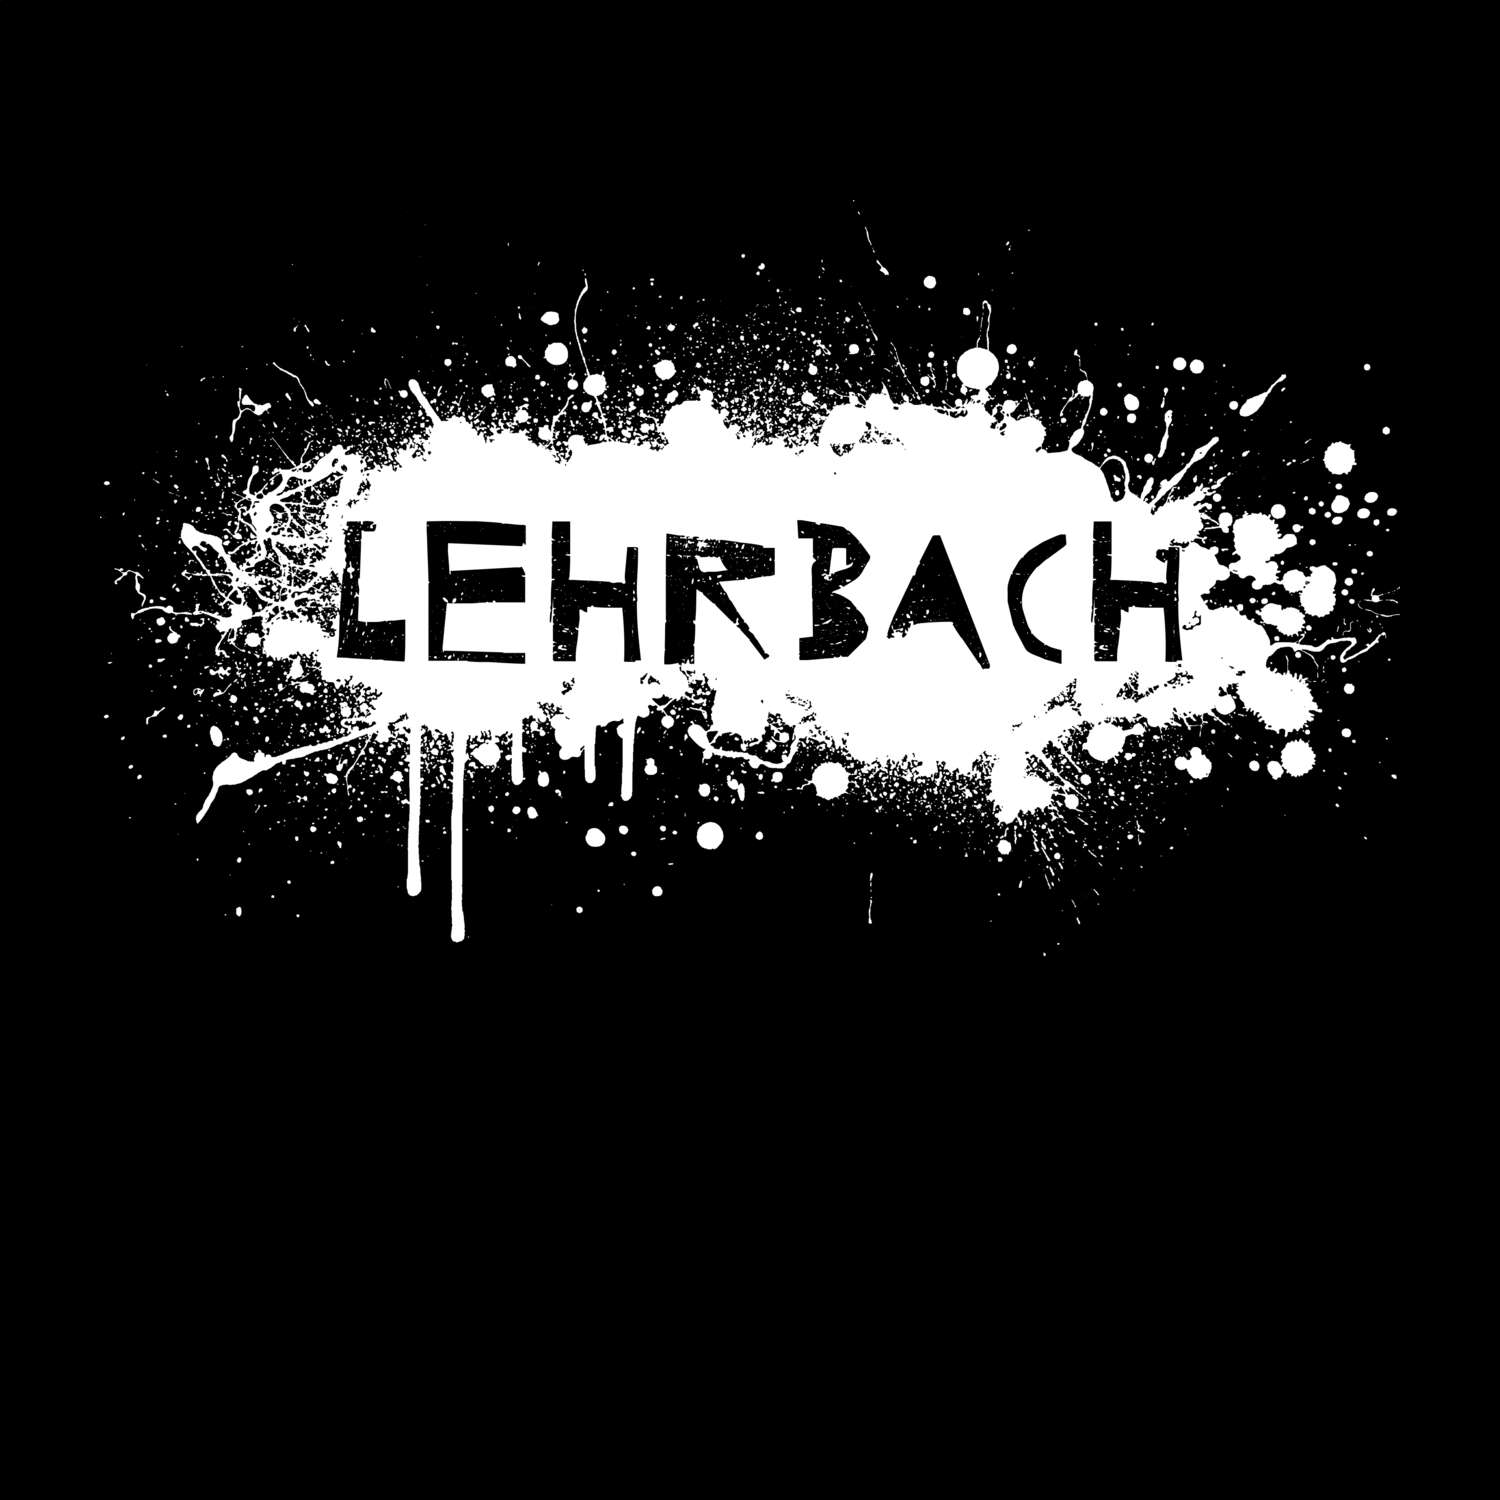 Lehrbach T-Shirt »Paint Splash Punk«